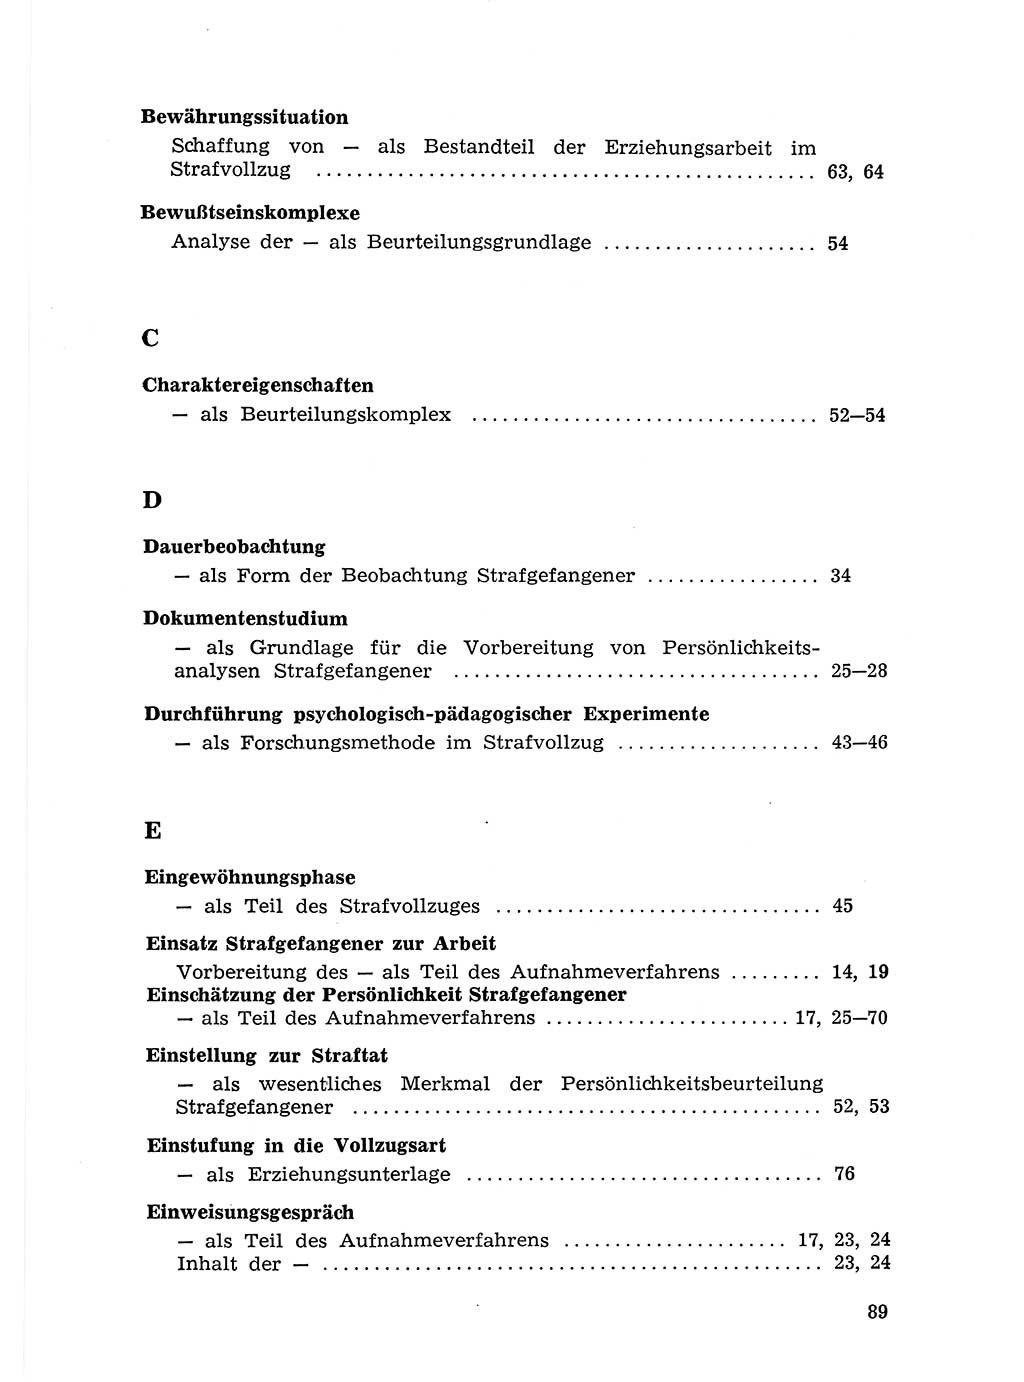 Sozialistischer Strafvollzug (SV) [Deutsche Demokratische Republik (DDR)] 1972, Seite 89 (Soz. SV DDR 1972, S. 89)